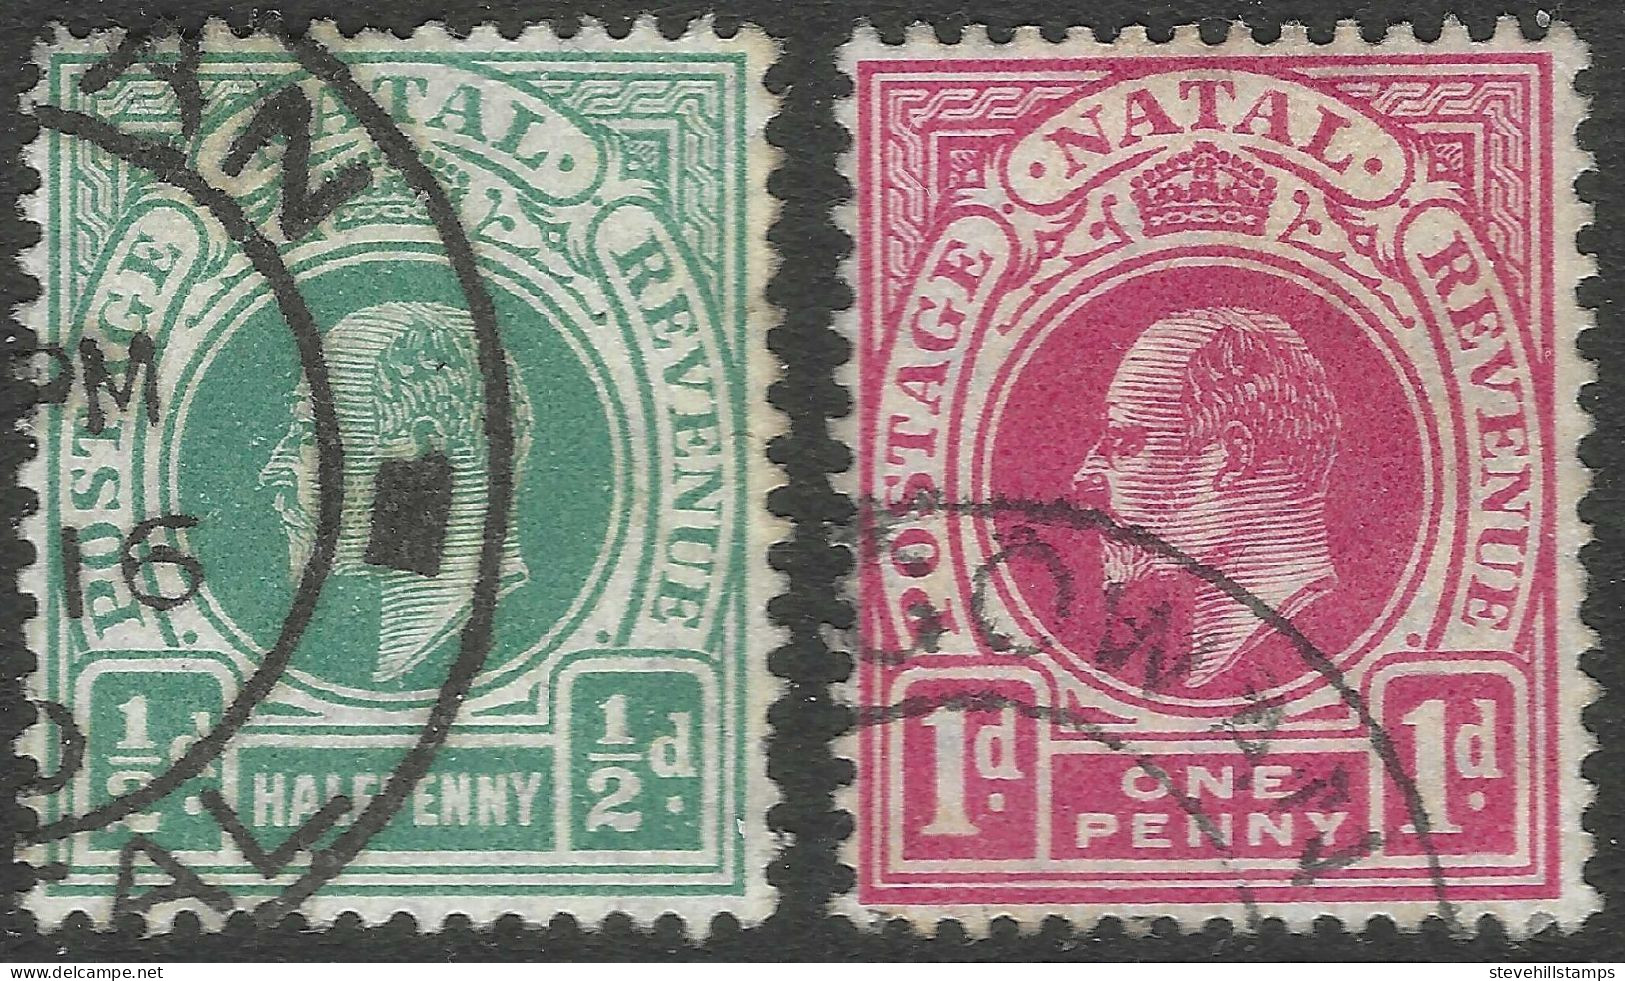 Natal. 1904-8 KEVII. ½d, 1d Used. Mult Crown CA Watermark SG 146, 147. M3061 - Natal (1857-1909)